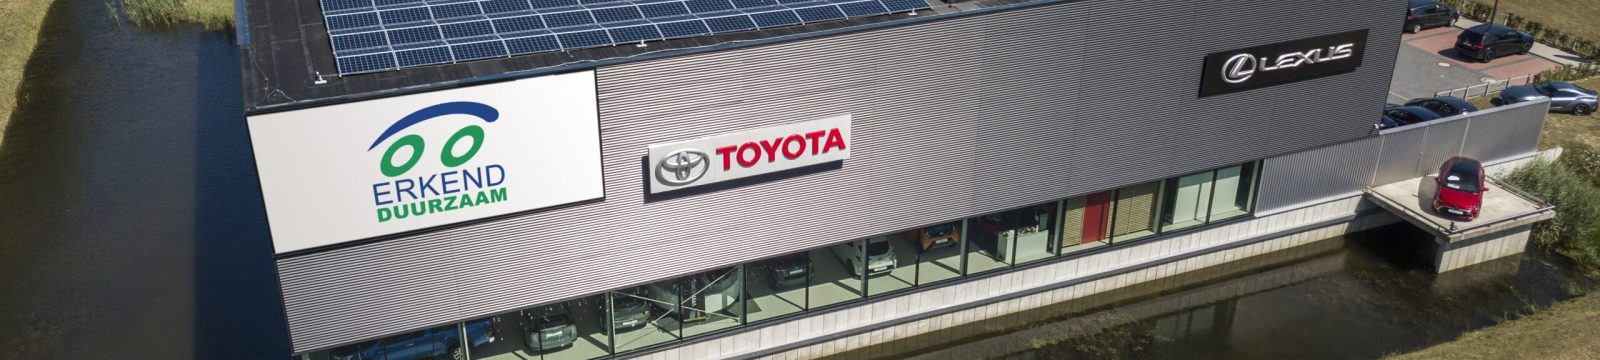 Toyota en Lexus dealerorganisatie Erkend Duurzaam Plus